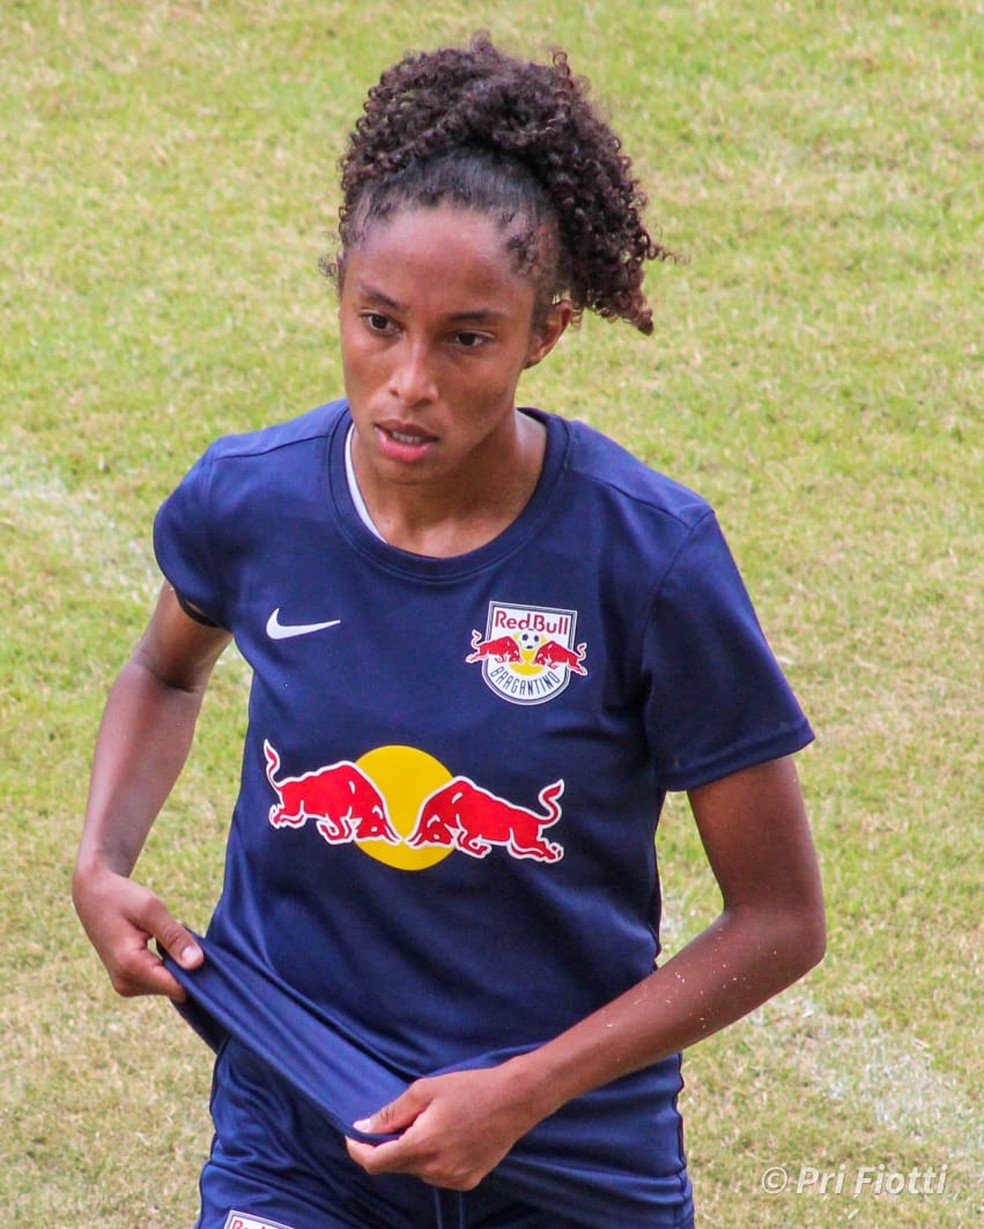 Jogadoras do Vila Nova feminino realizam sonho com transferência